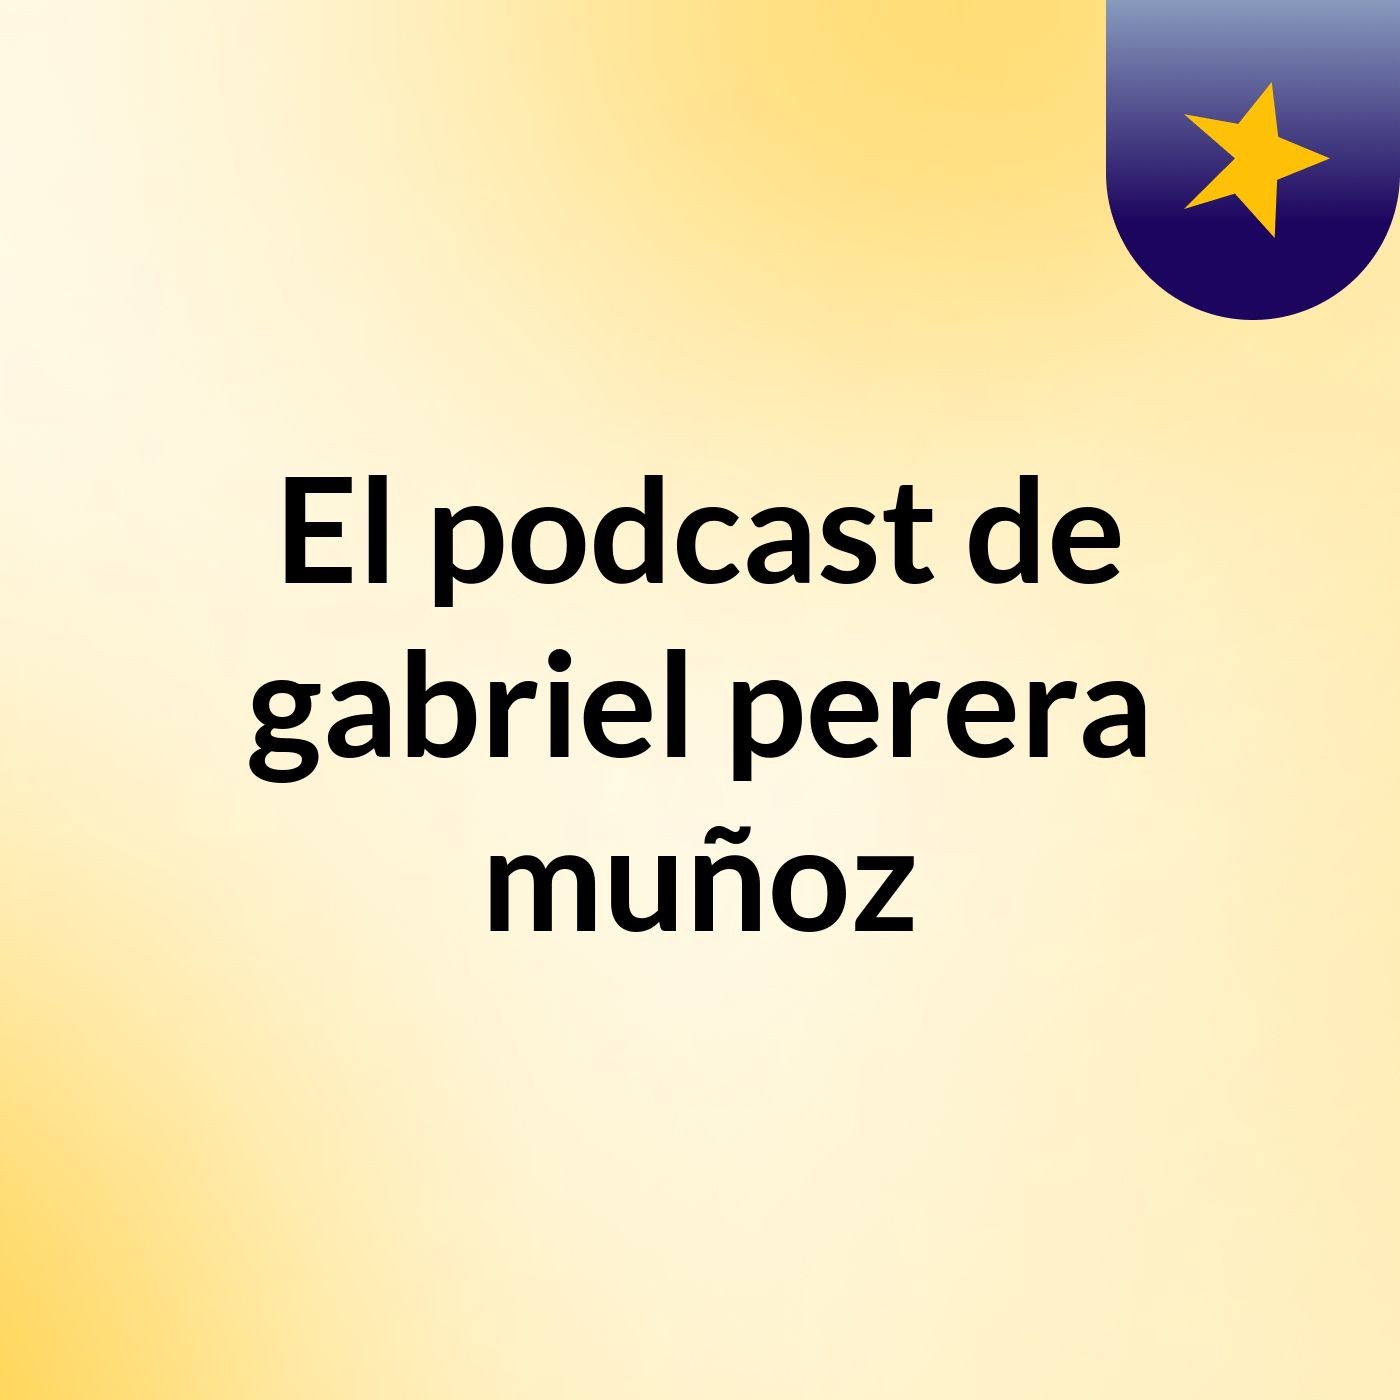 Episodio 9 - El podcast de gabriel perera muñoz